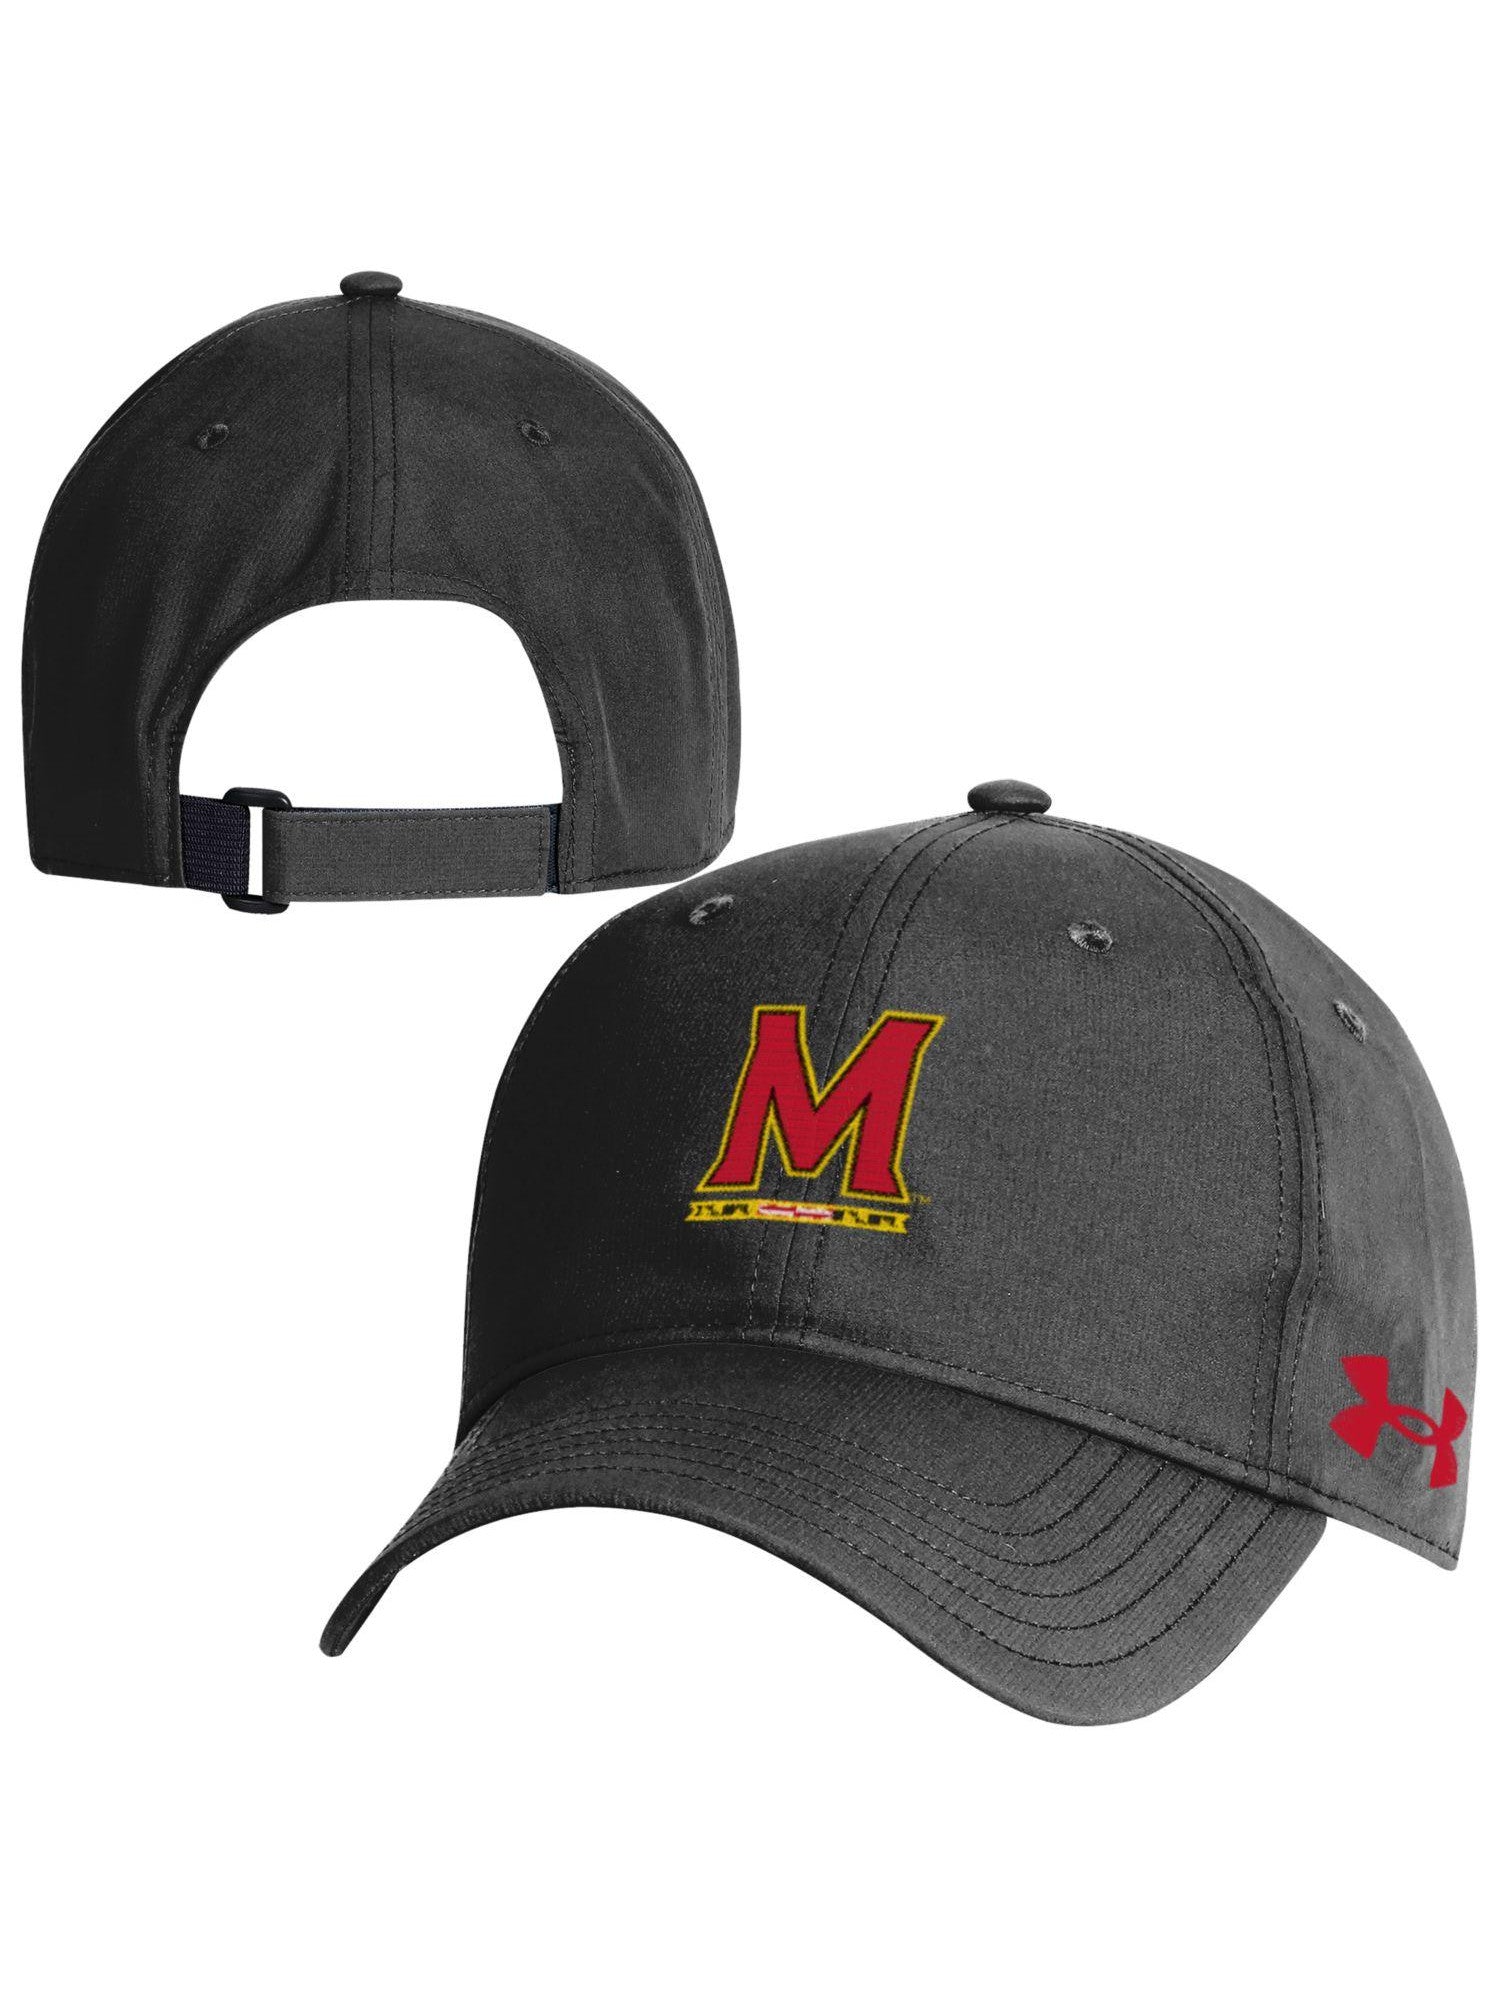 Under Armor Gifts Maryland University (Black) Cap Maryland Baseball – of